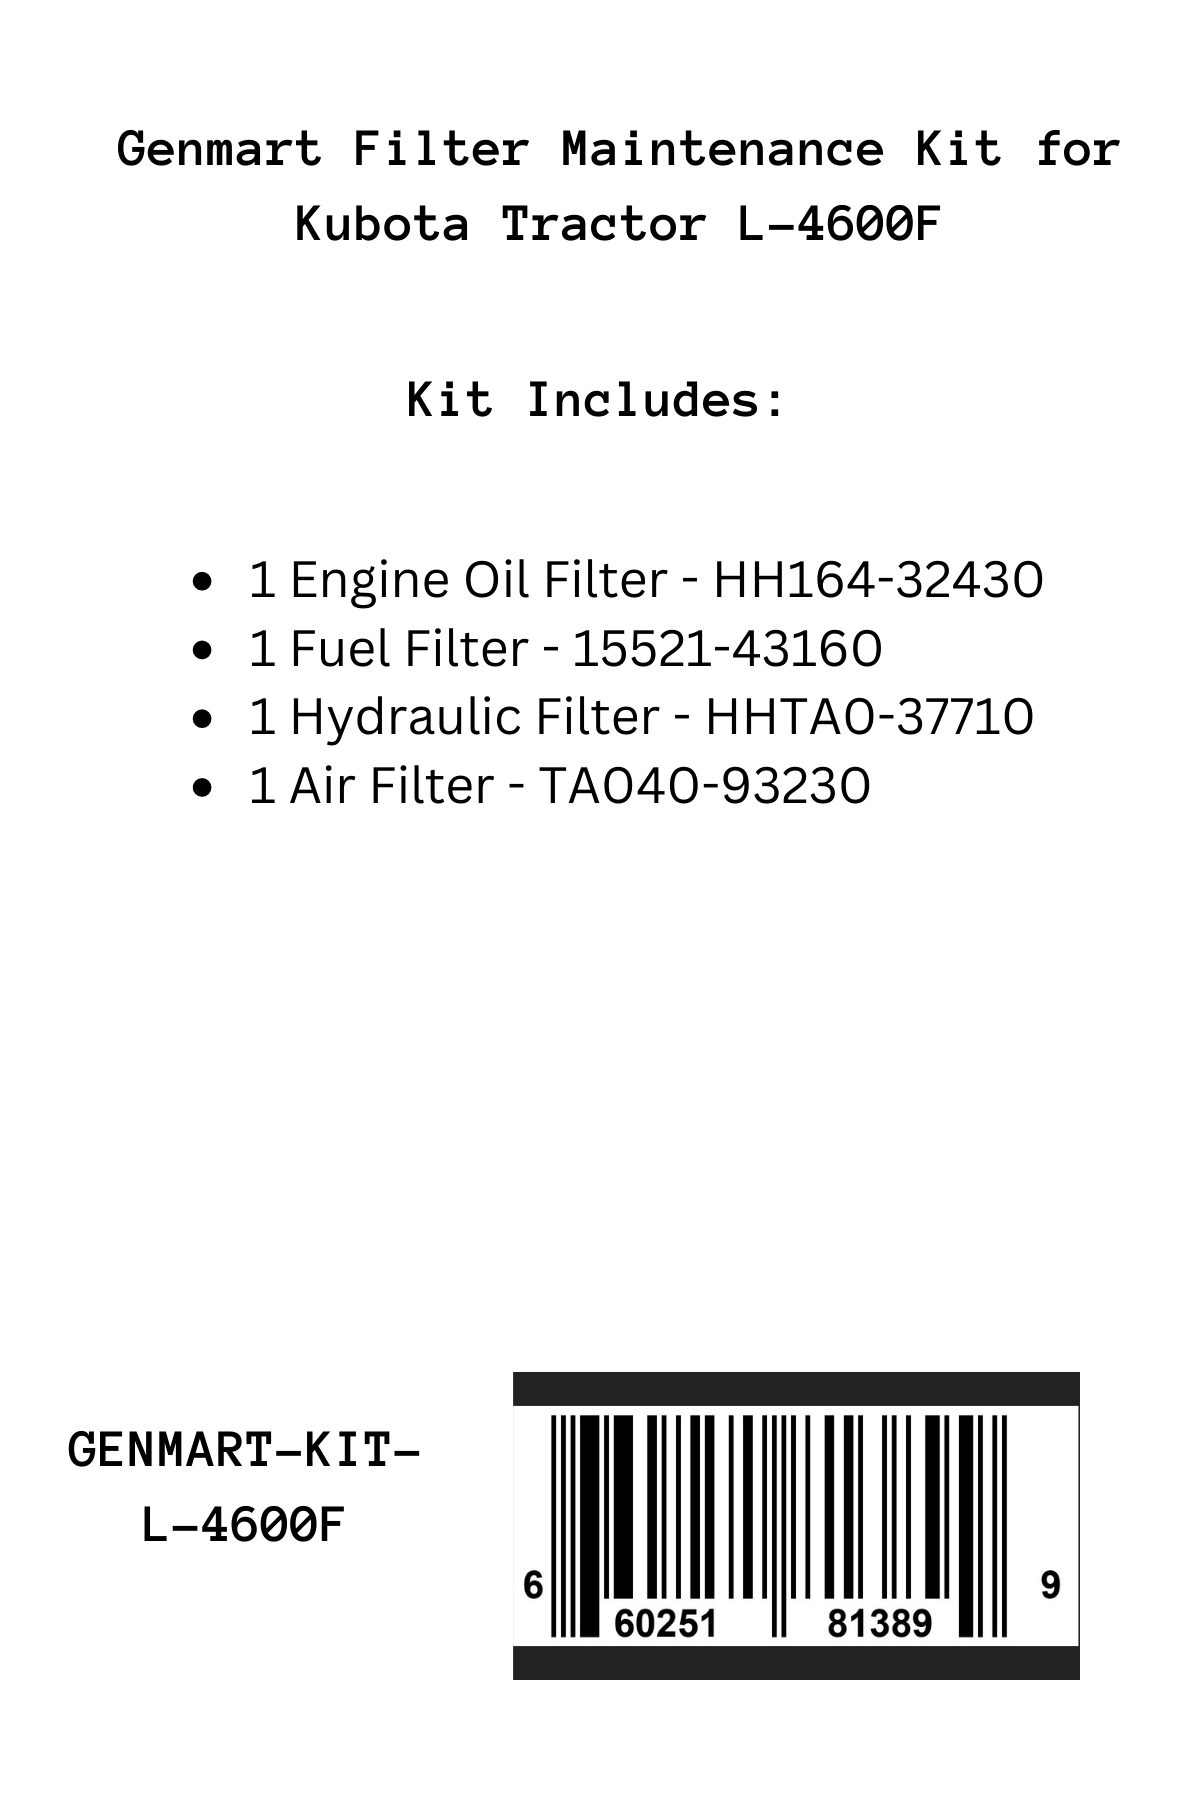 Genmart Filter Maintenance Kit for Kubota Tractor L-4600F